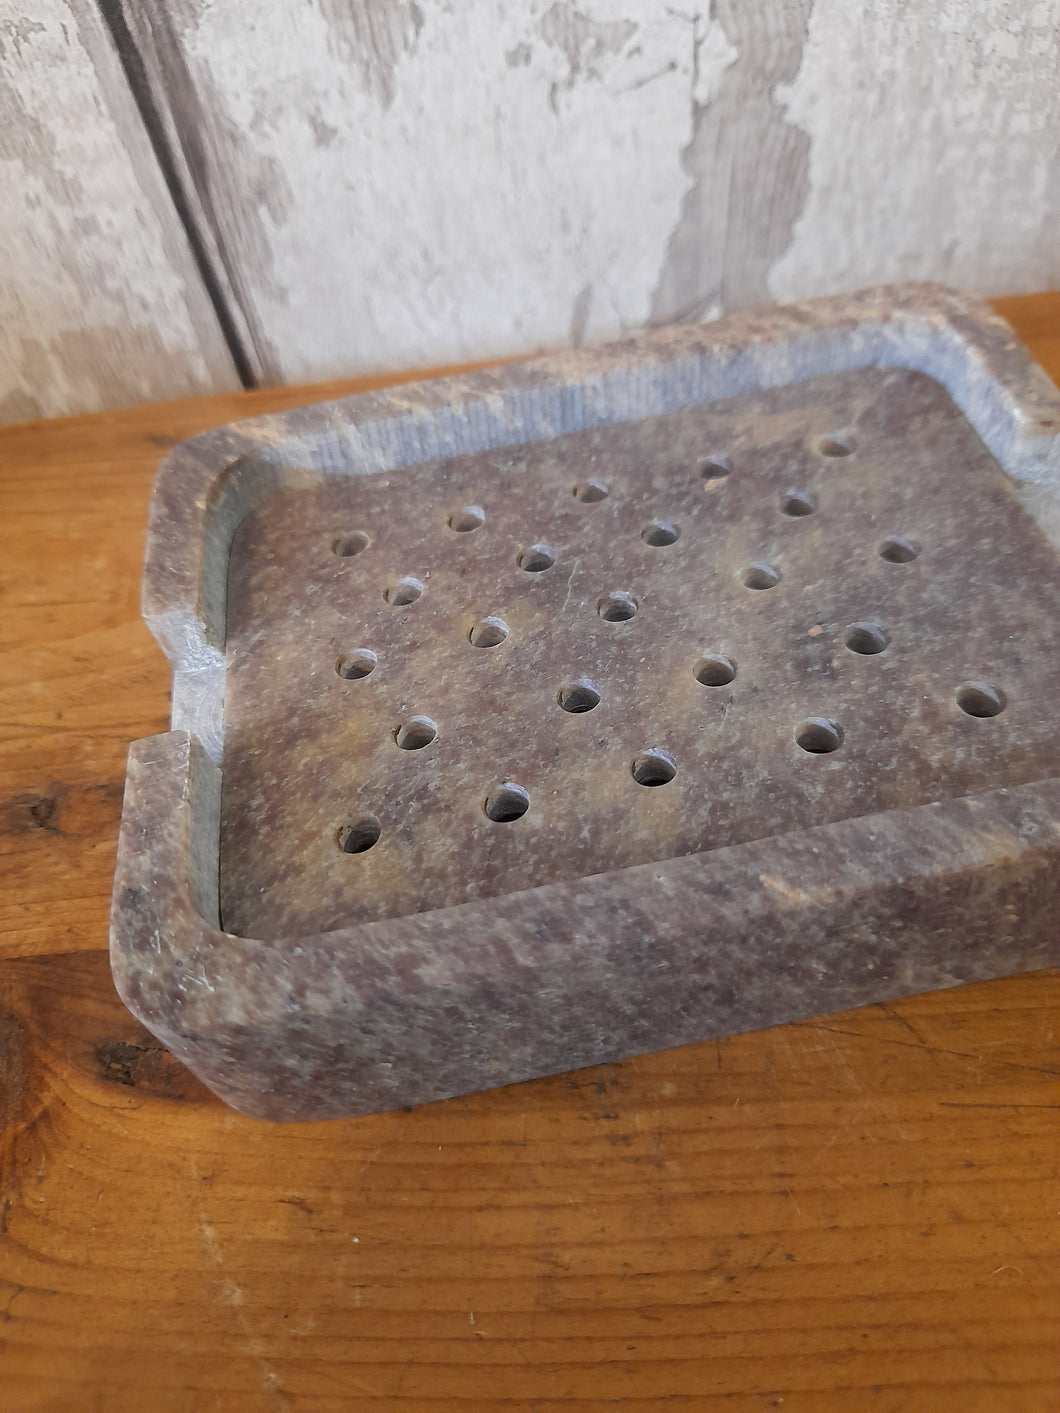 Gorara soap stone soap dish